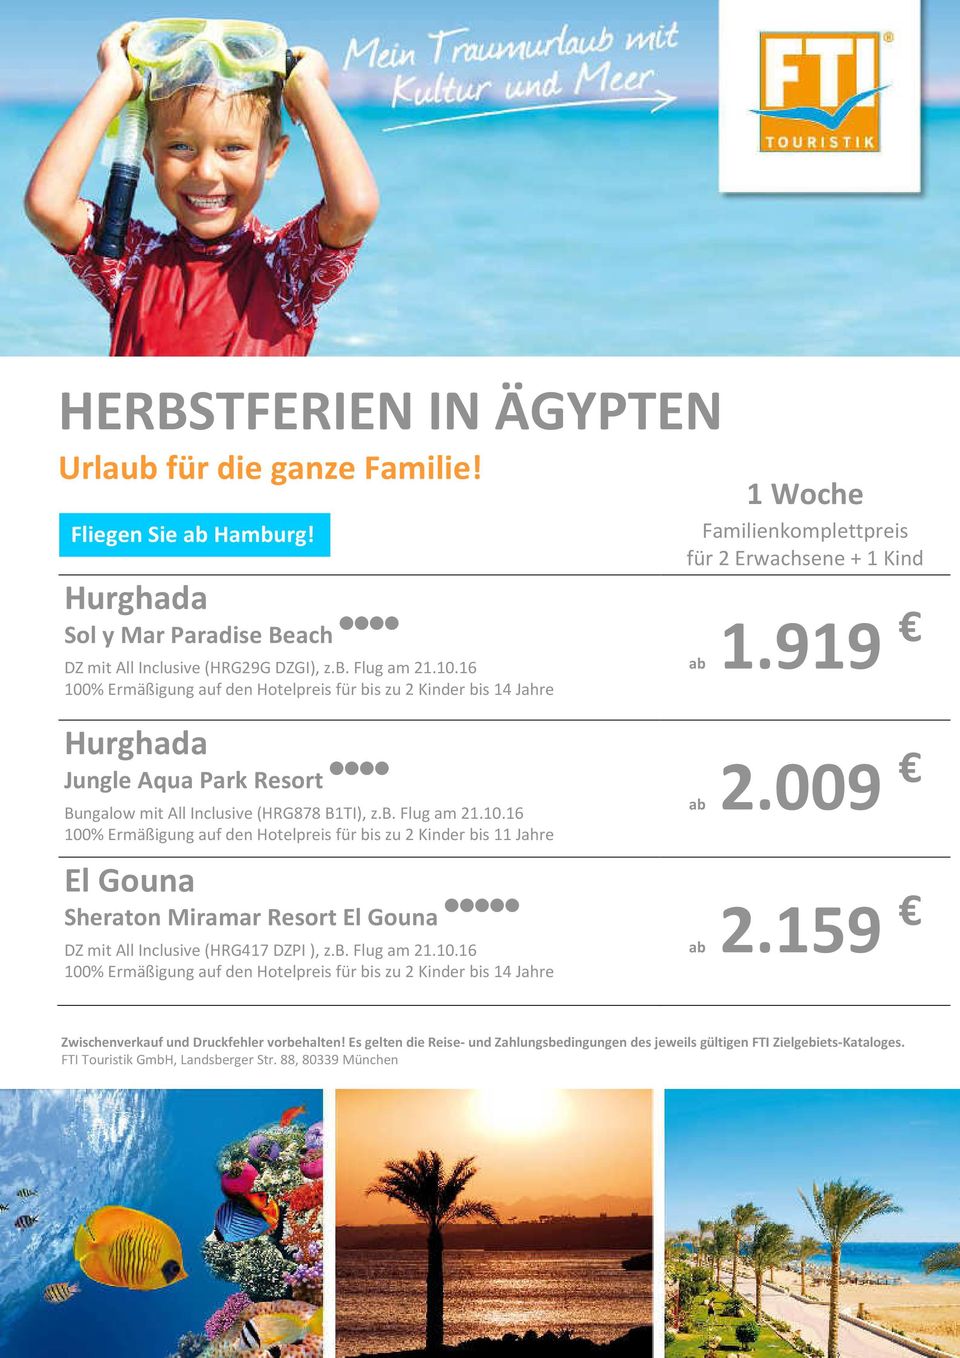 919 Hurghada Jungle Aqua Park Resort **** Bungalow mit All Inclusive (HRG878 B1TI), z.b. Flug am 21.10.